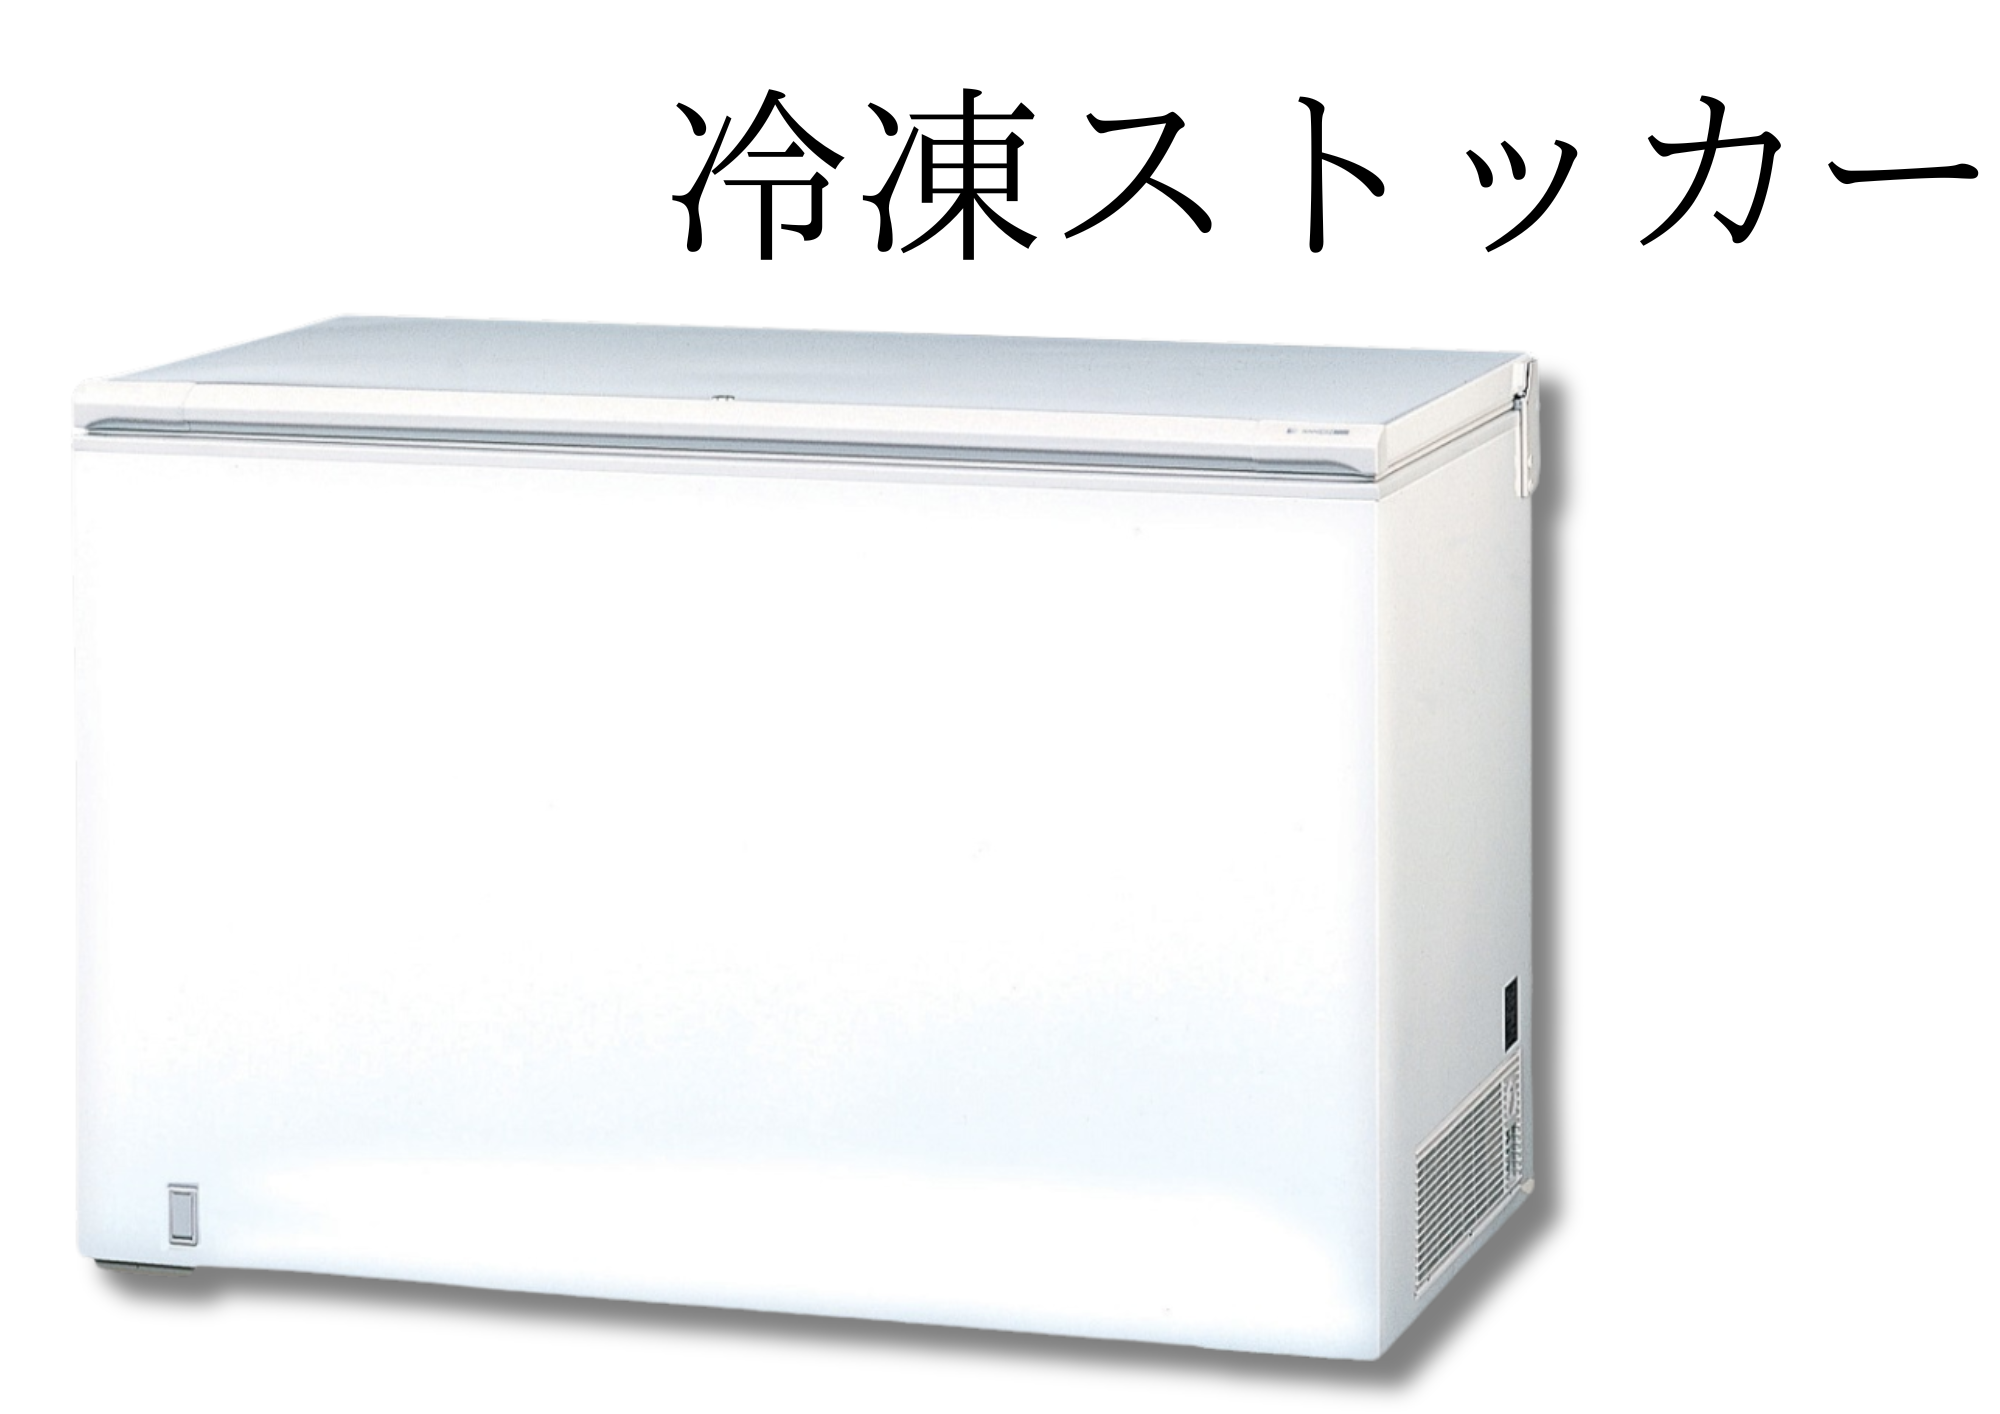 【ストックに特化した冷凍・冷蔵庫】冷凍ストッカー イメージ